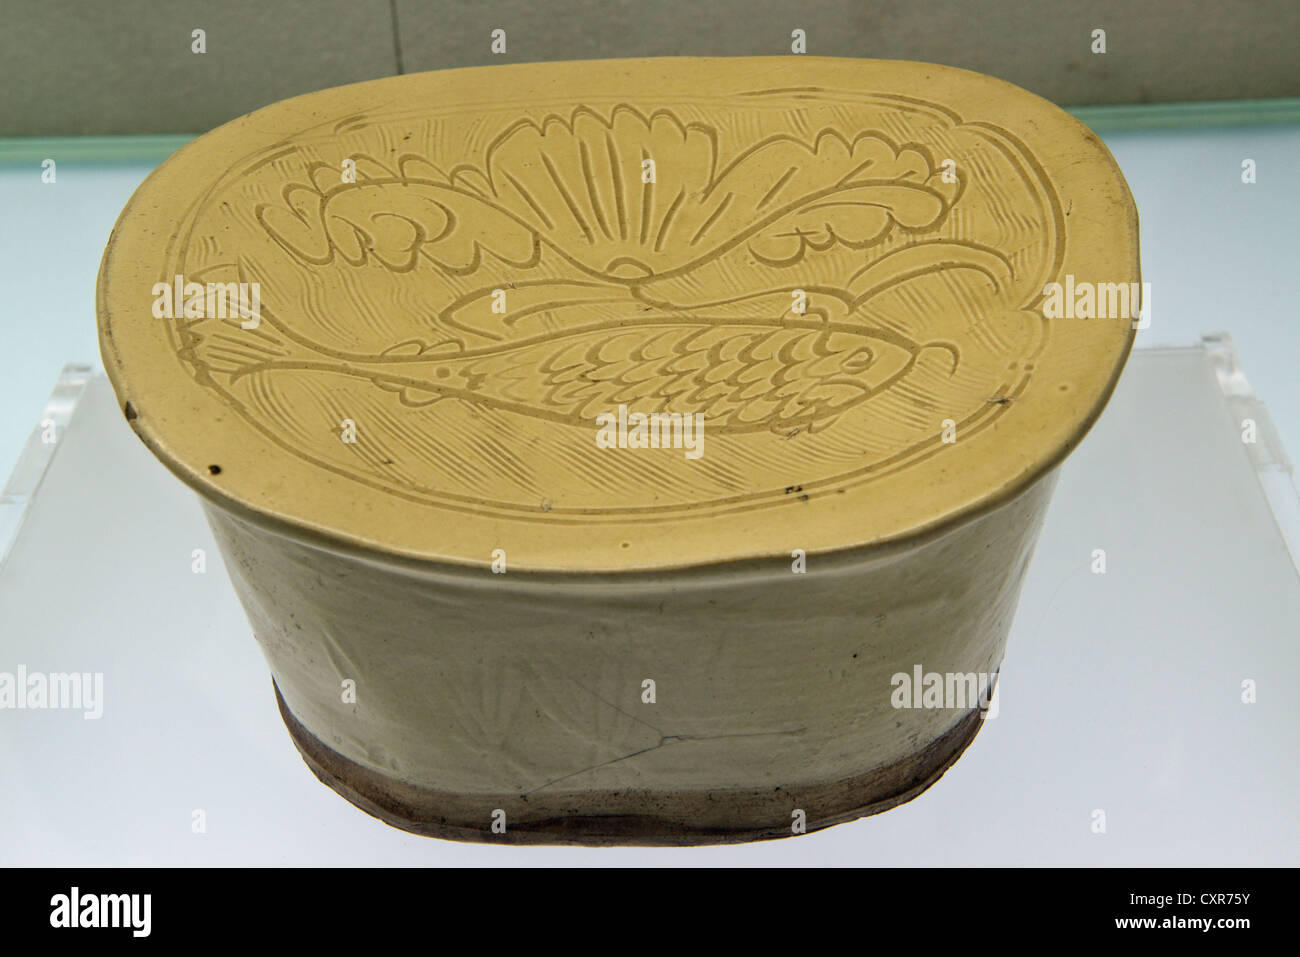 Porcellana Bianca cuscino con pesce intagliato e floreali, Jin dinastia (1115-1234). Museo dello Shanxi. Cina. Foto Stock